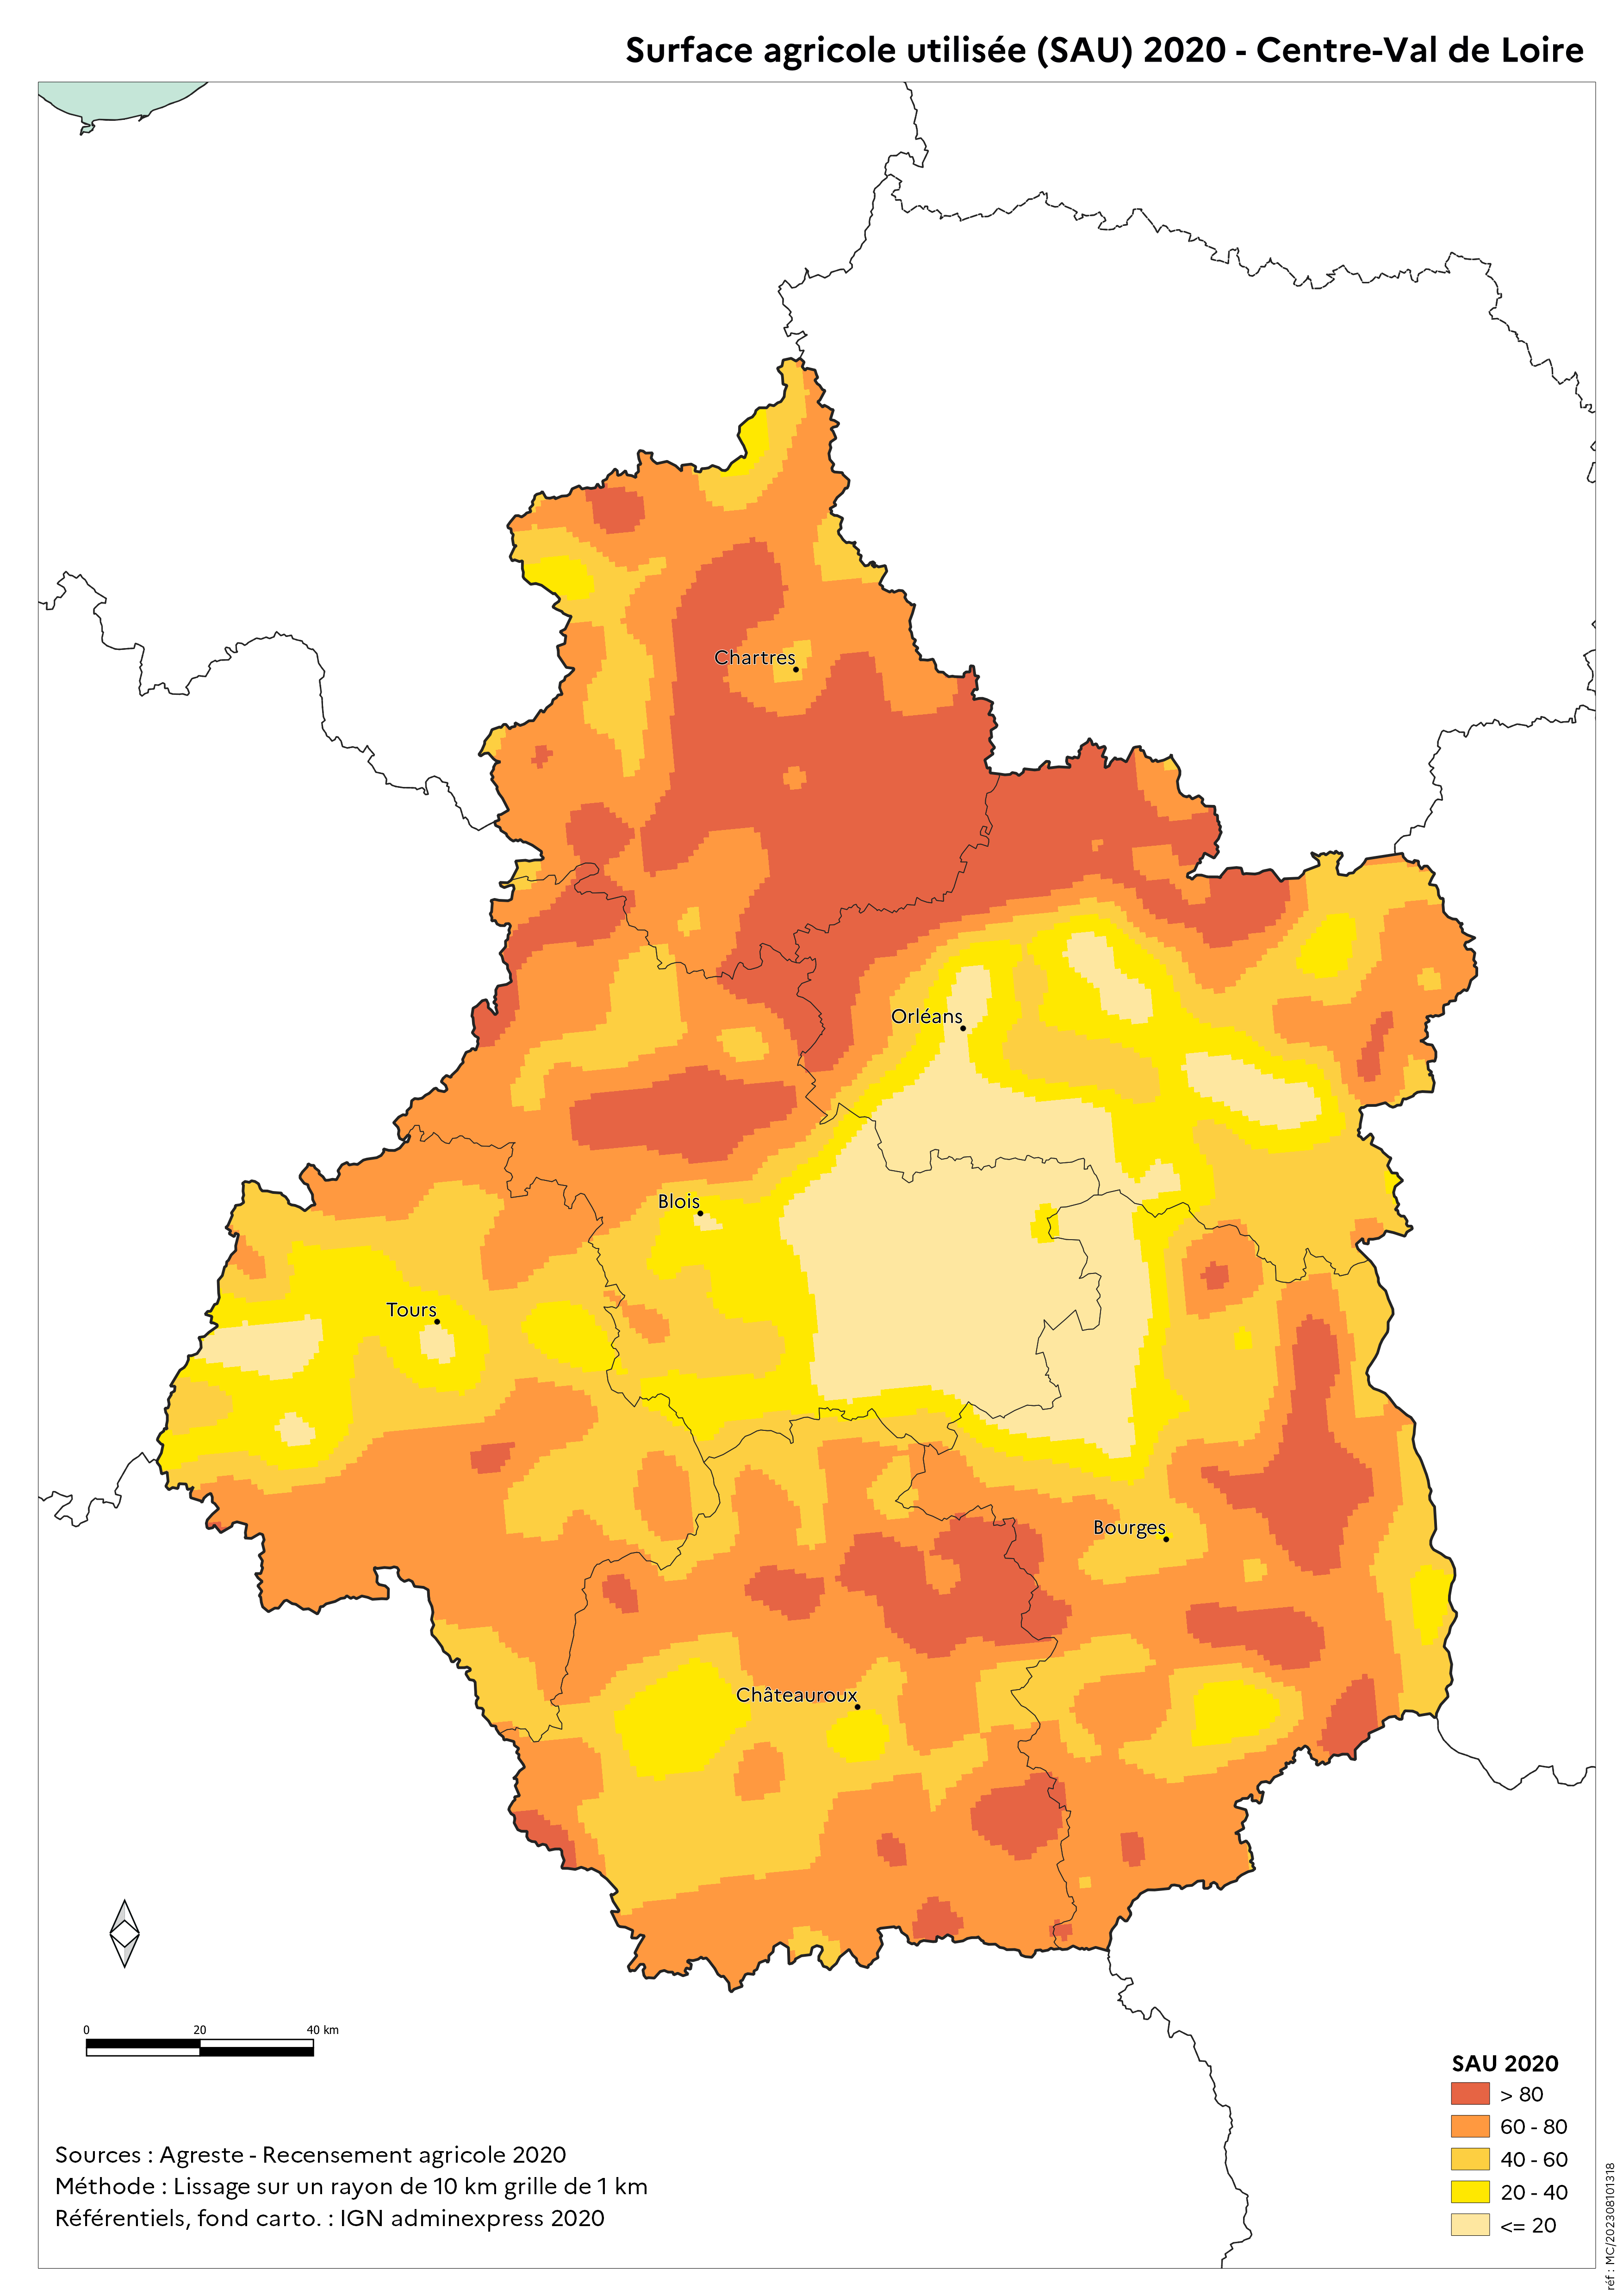 Image 1 : Surface agricole utilisée (SAU) 2020 - Centre-Val de Loire